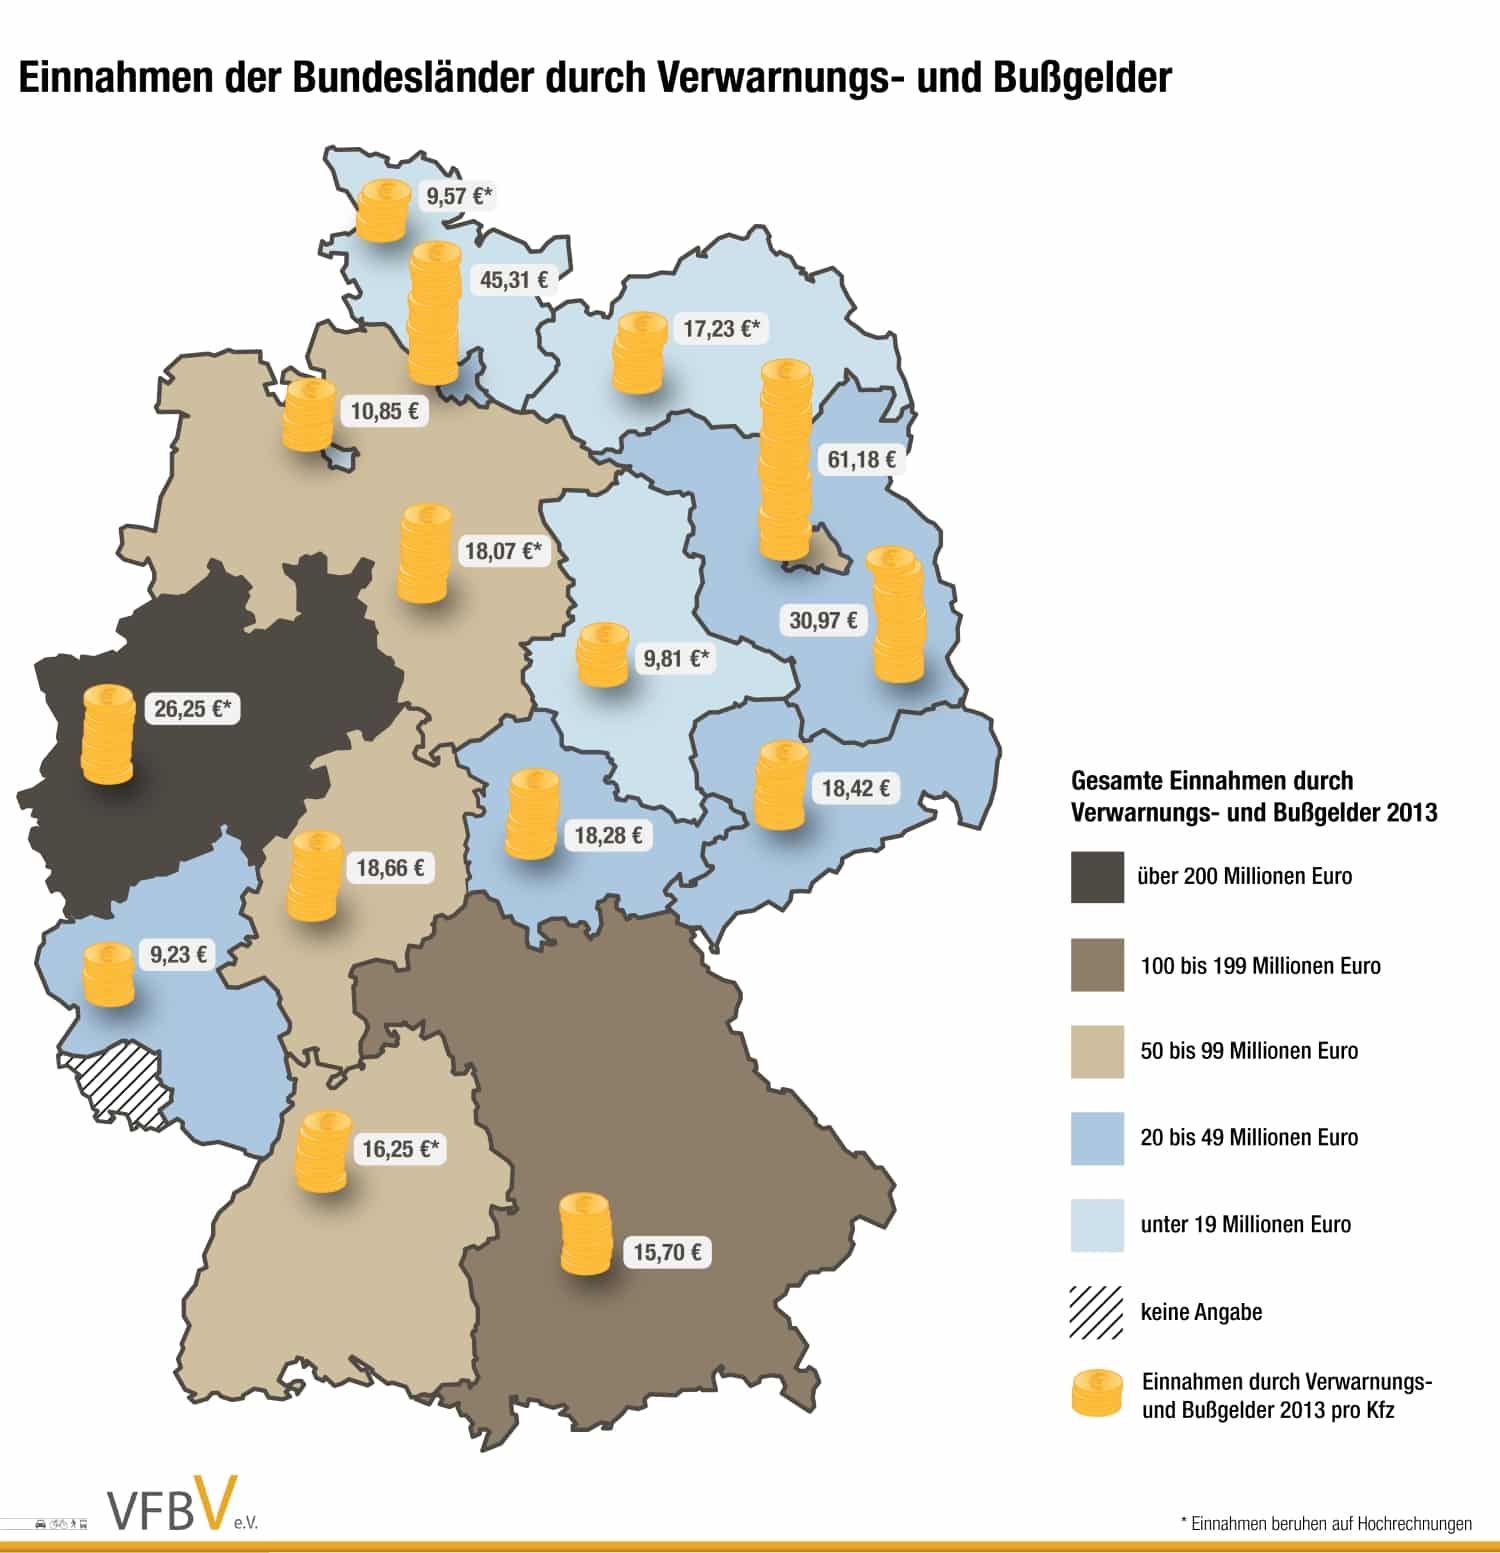 Bußgeldatlas über die Einnahmen der deutschen Bundesländer aus Verwarnungs- und Bußgeldern